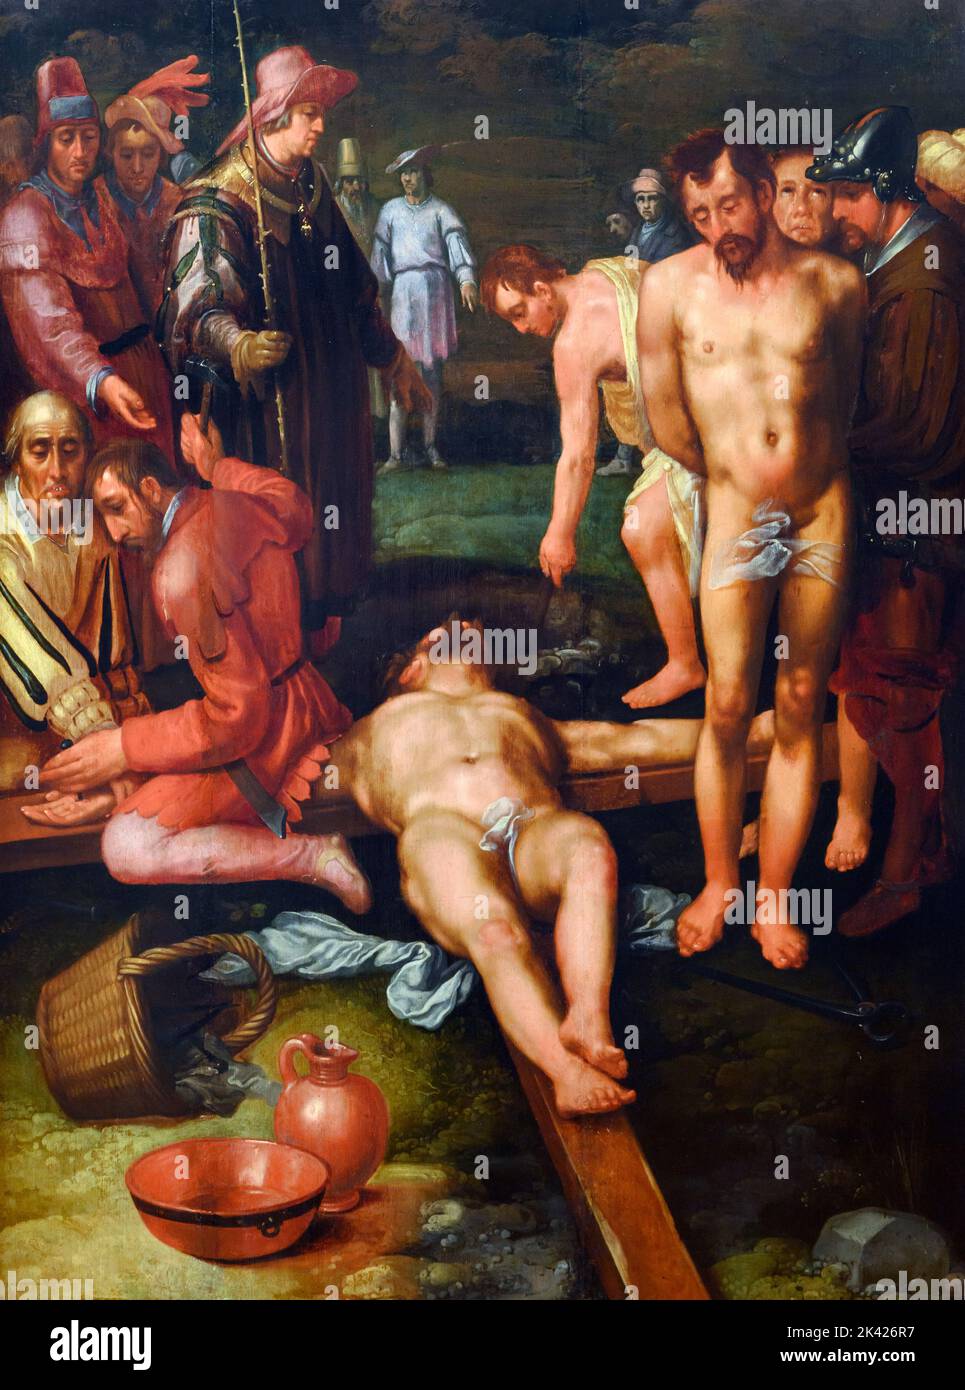 Cornelis van Haarlem. Cristo inchiodato alla Croce dal pittore olandese dell'età dell'oro, Cornelis Corneliszoon van Haarlem (1562-1638), olio su tela, c.. 1600-1610 Foto Stock